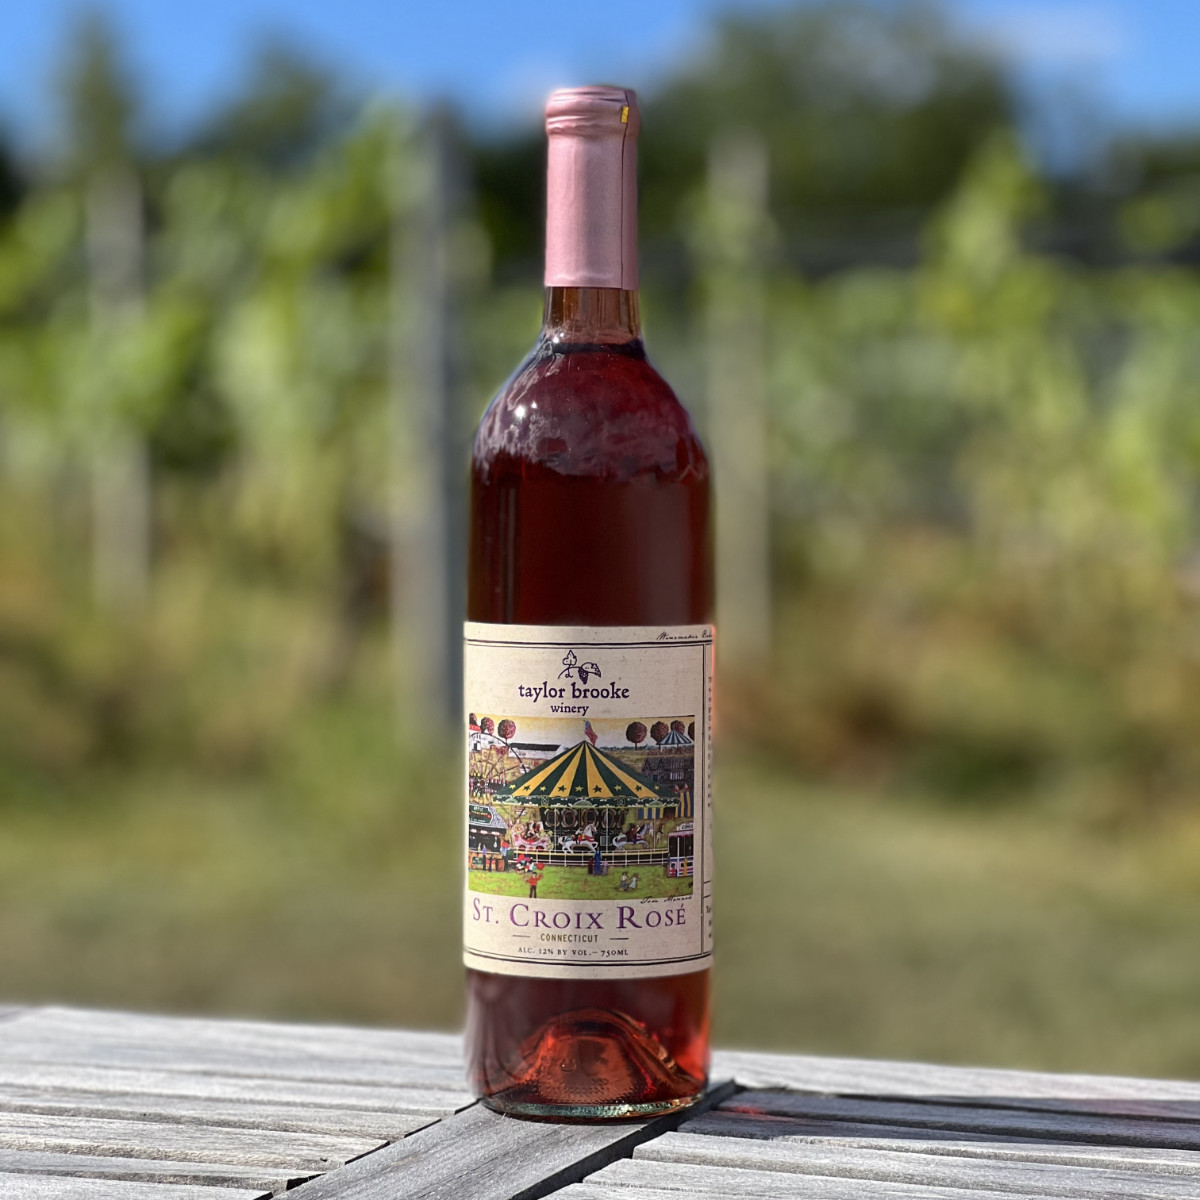 St. Croix Rosé wine bottle